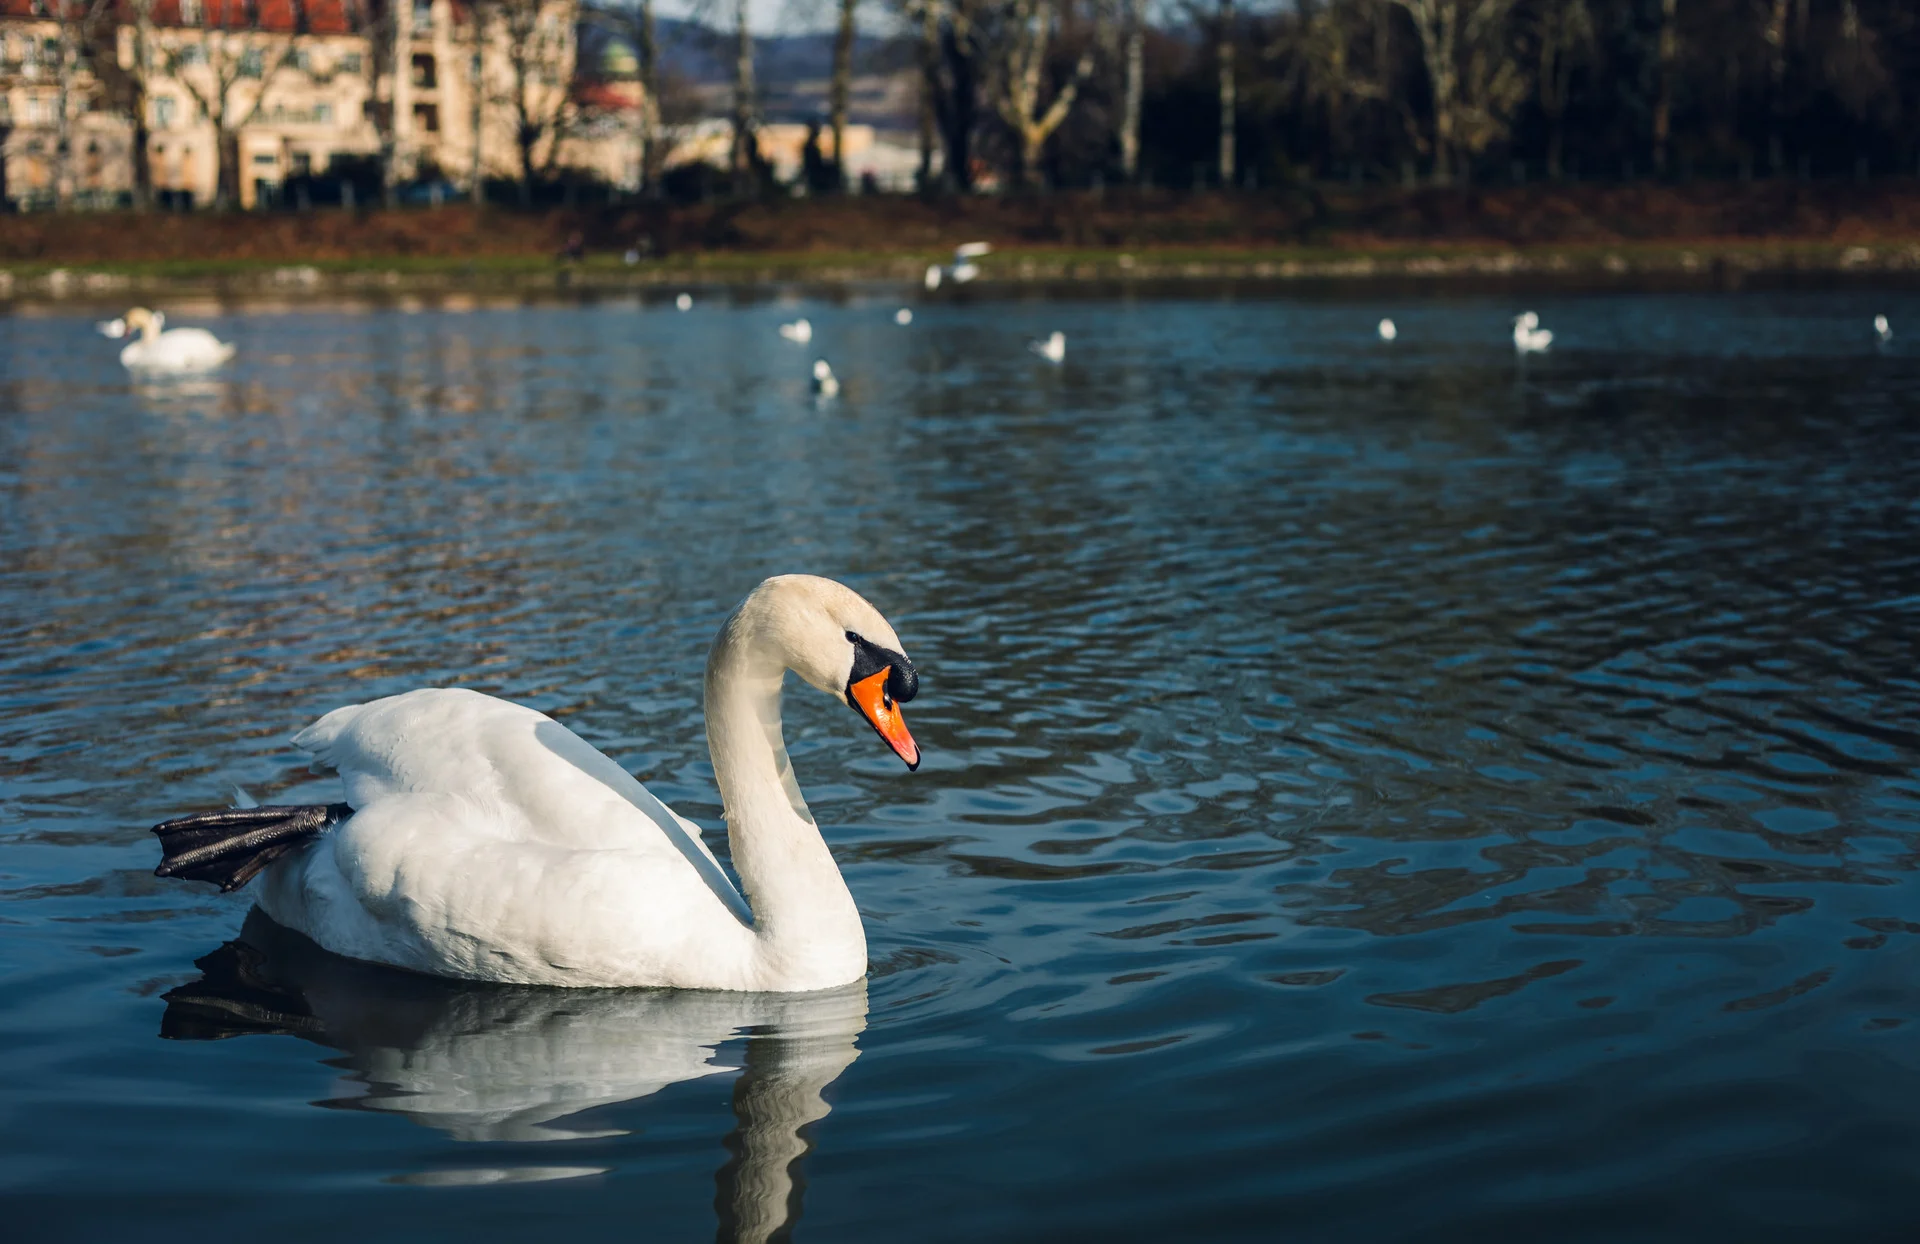 פישטני, סלובקיה Image, ,swans,on,the,river,with,reflection,in,water